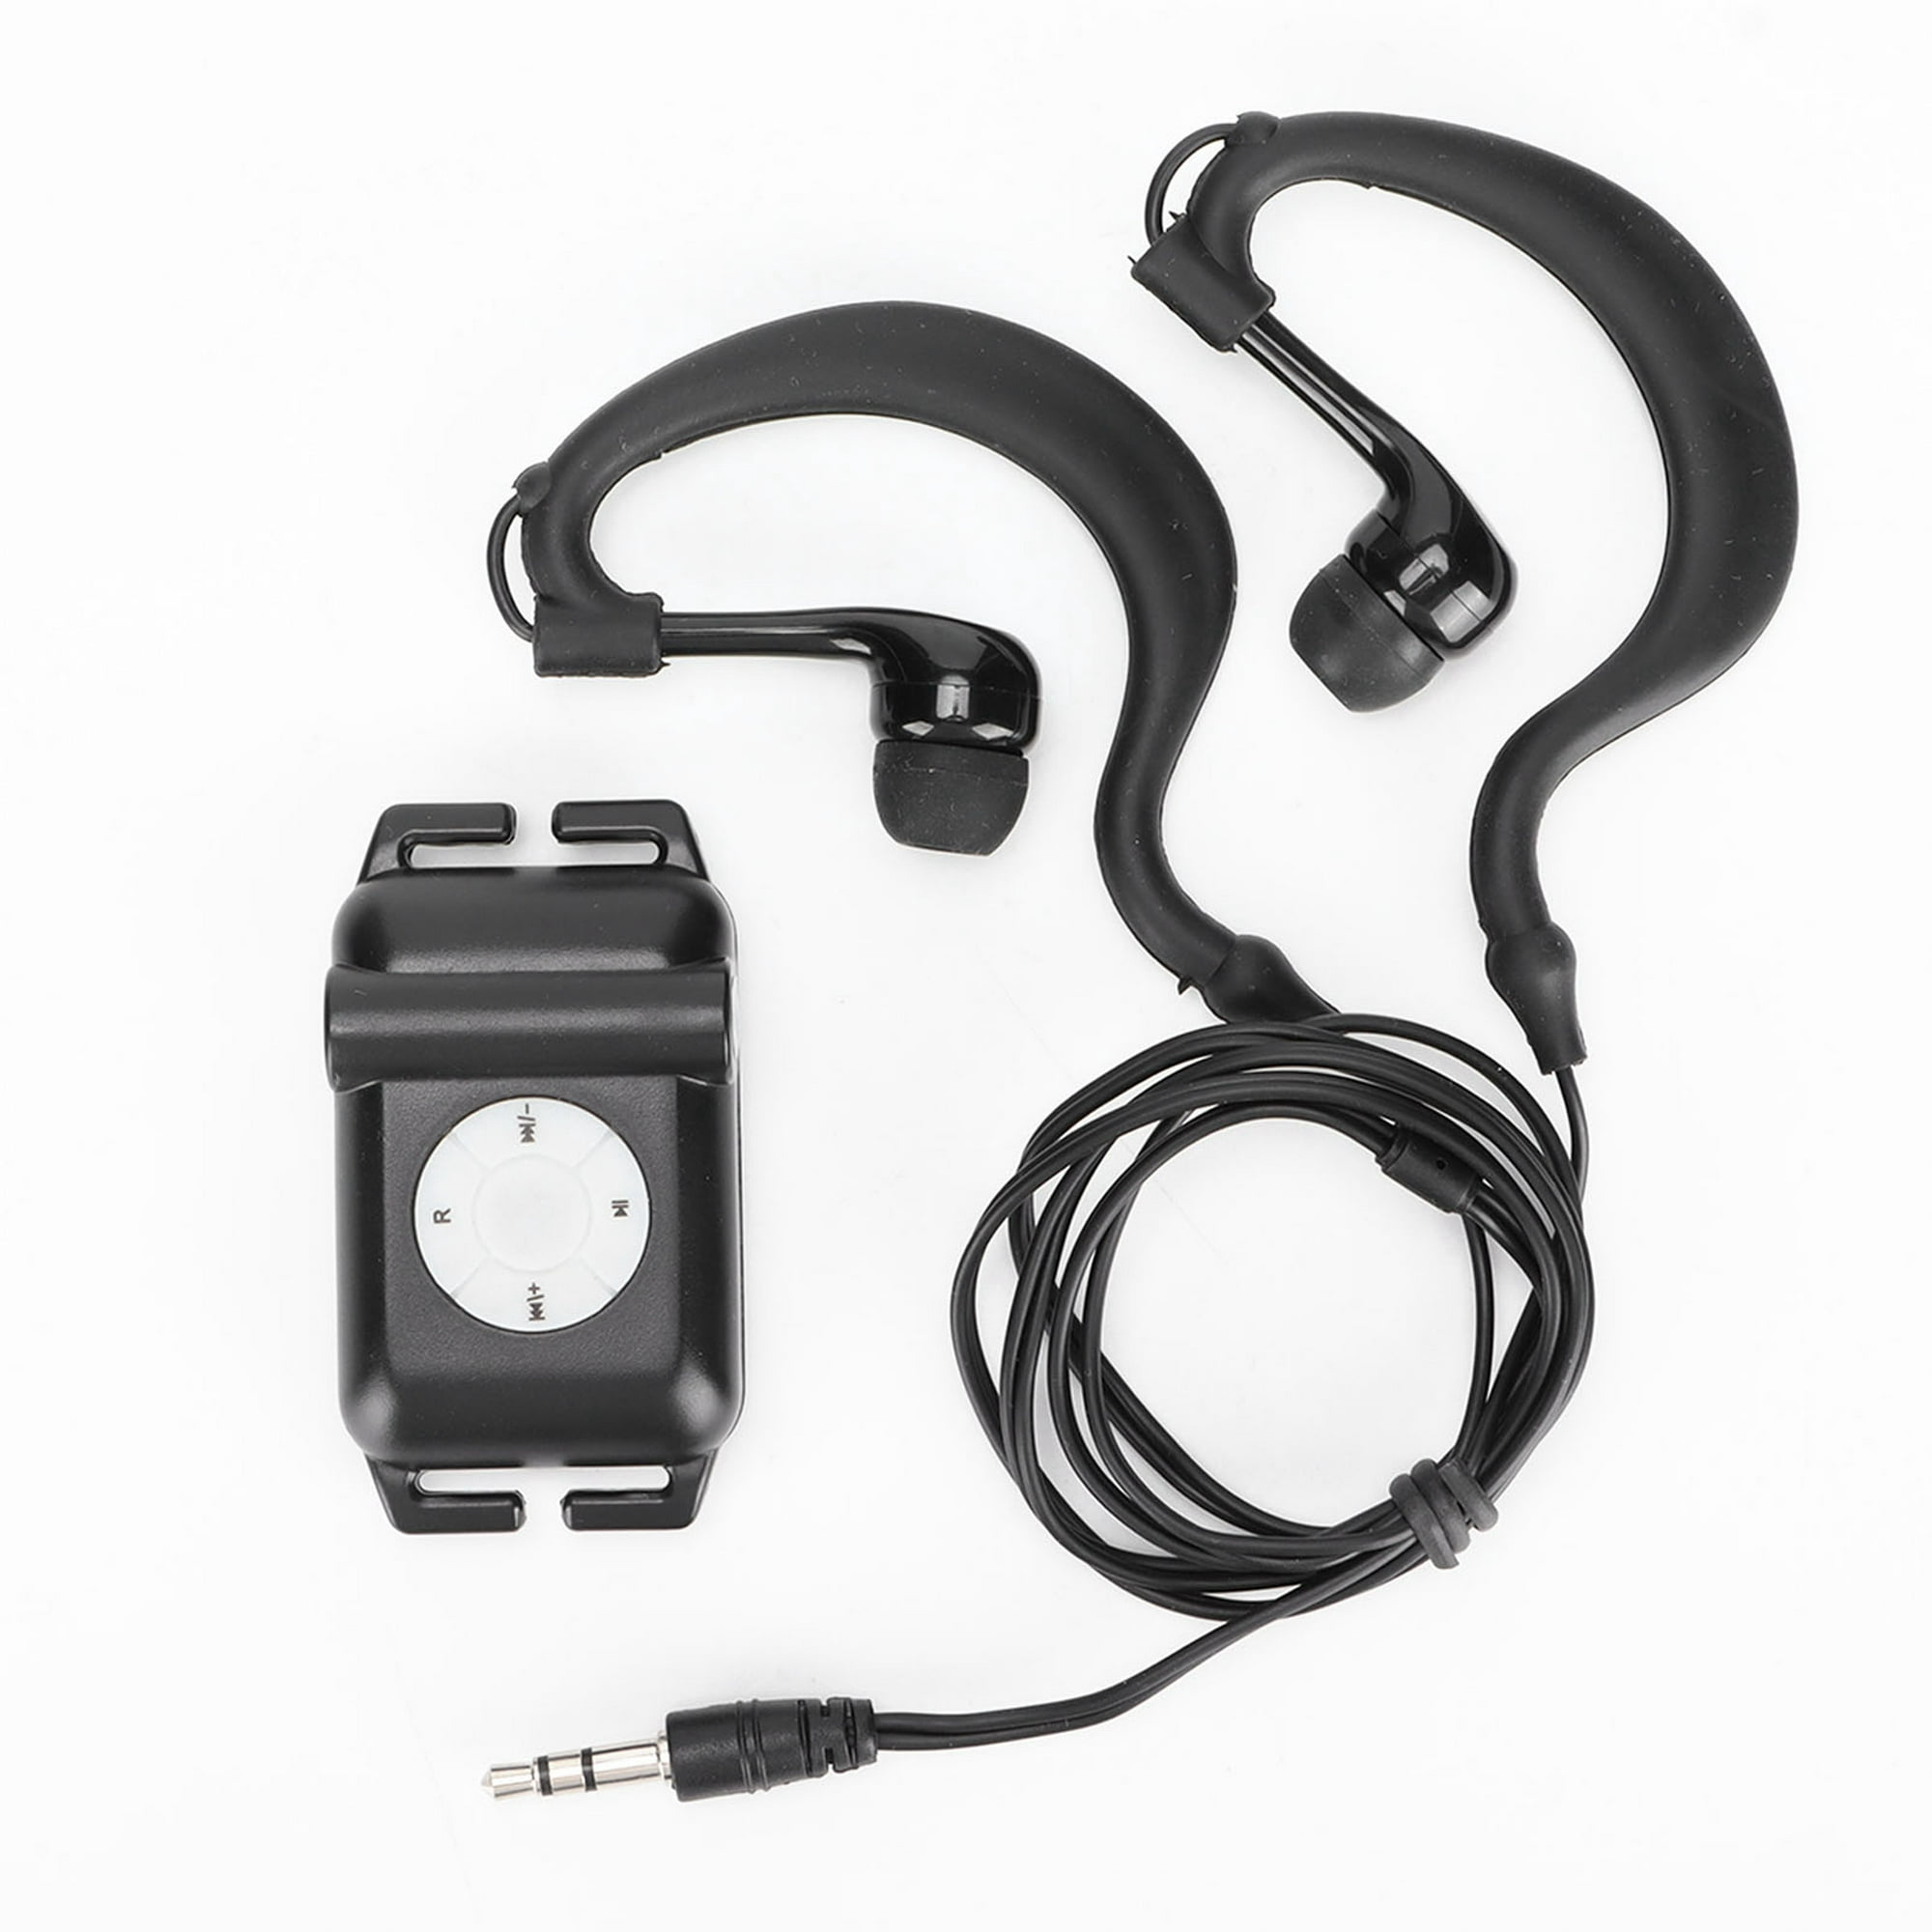 Reproductor de MP3 a prueba de agua IPx8 sonido HIFI de 4GB con auriculares  subacuáticos reproductor de MP3 para nadador para surf natación deportes  acuáticos correr